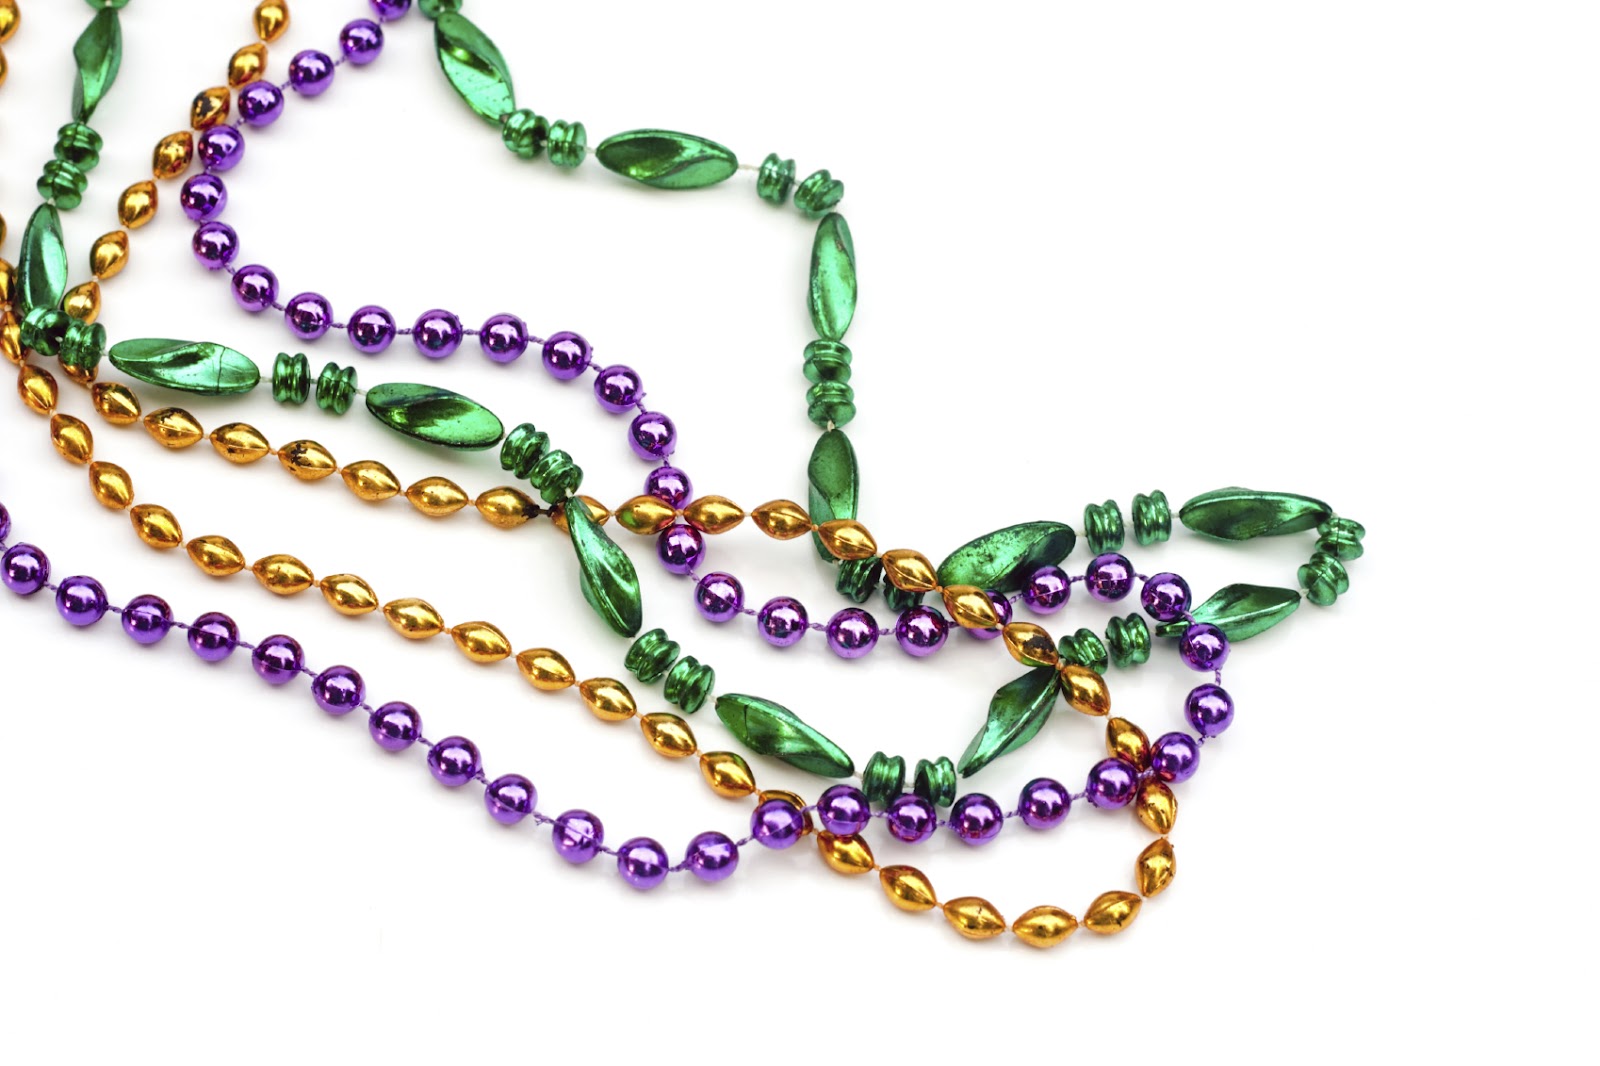 Mardi Gras beads. vector illu